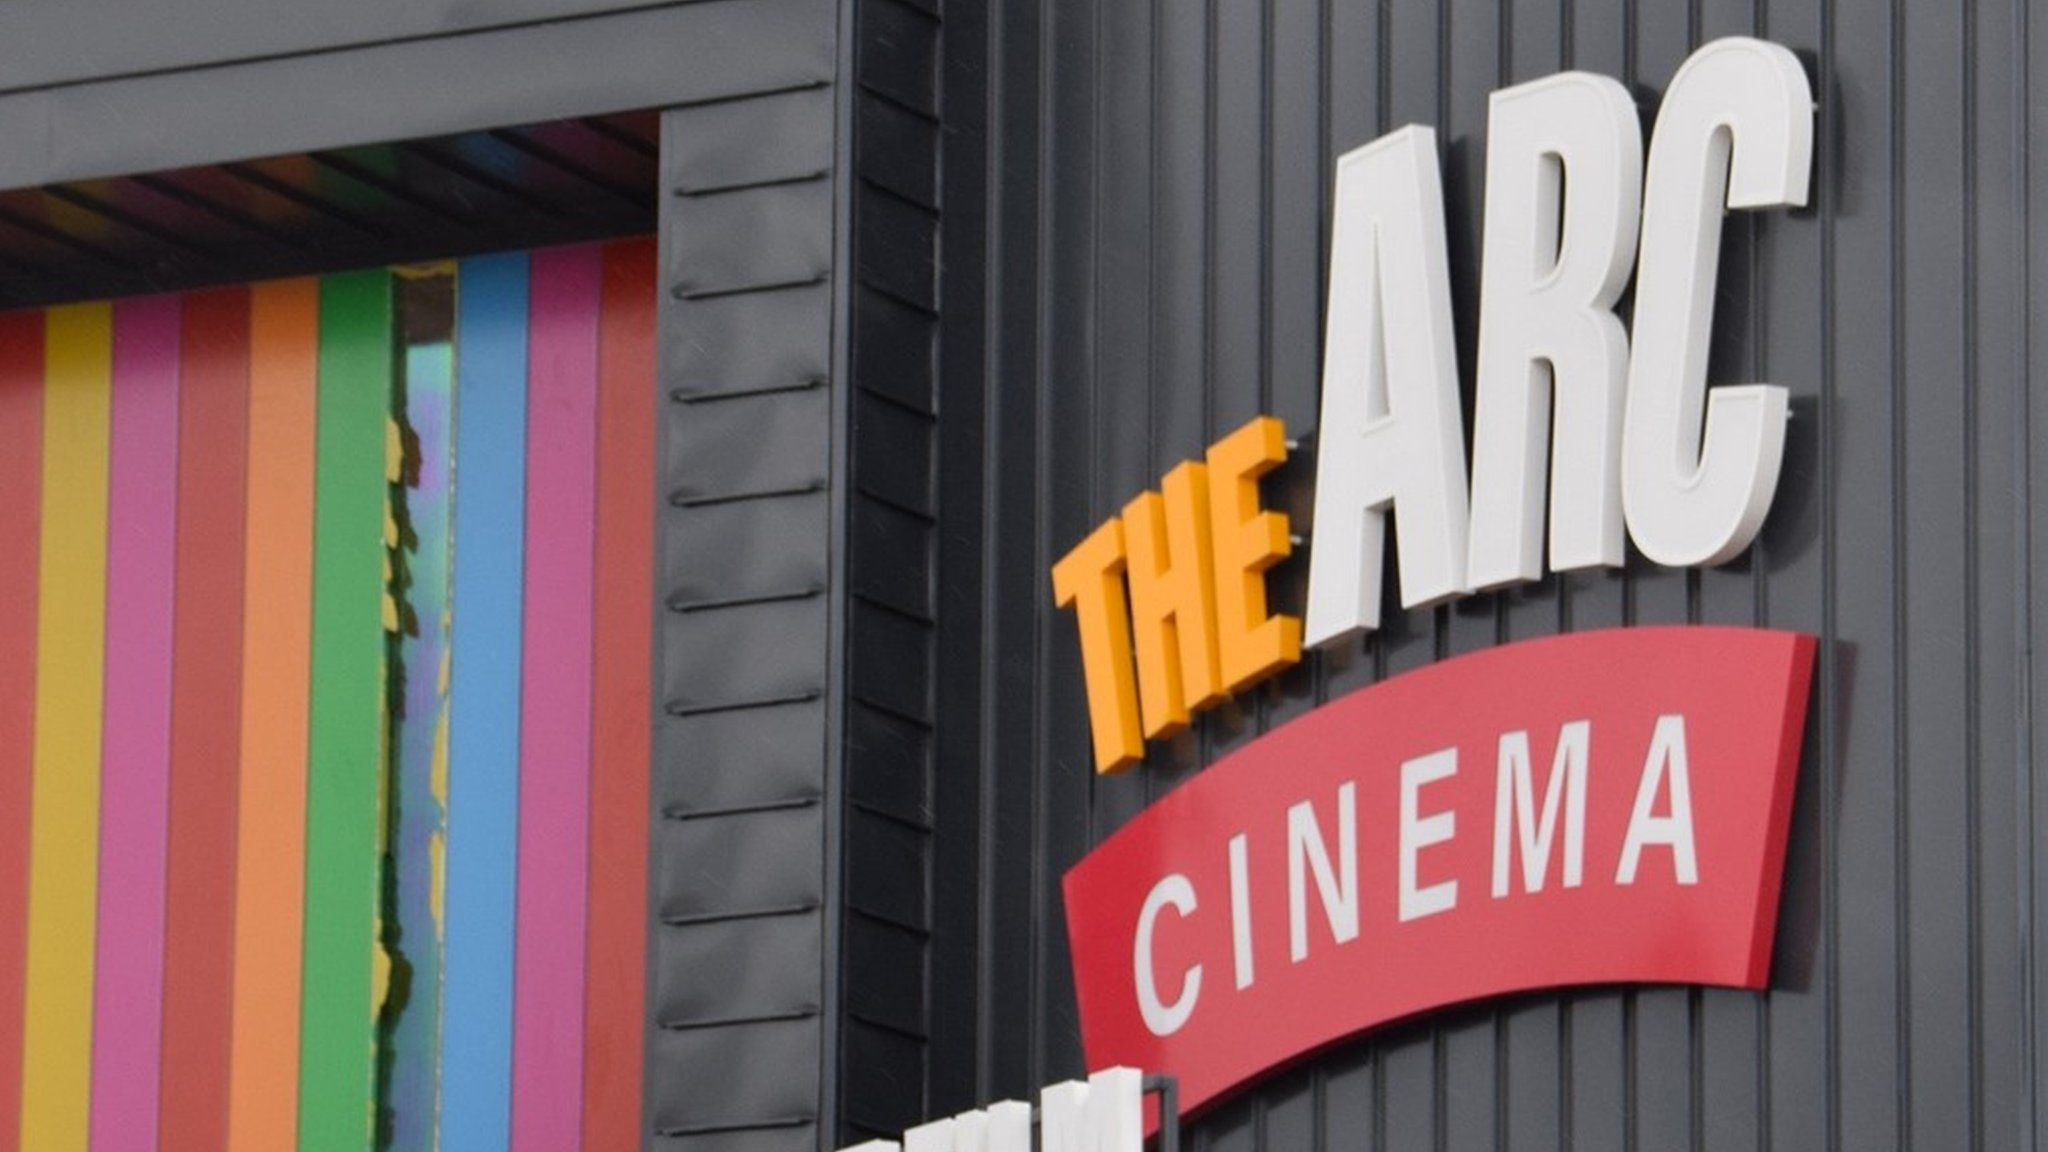 The Arc Cinema, Daventry